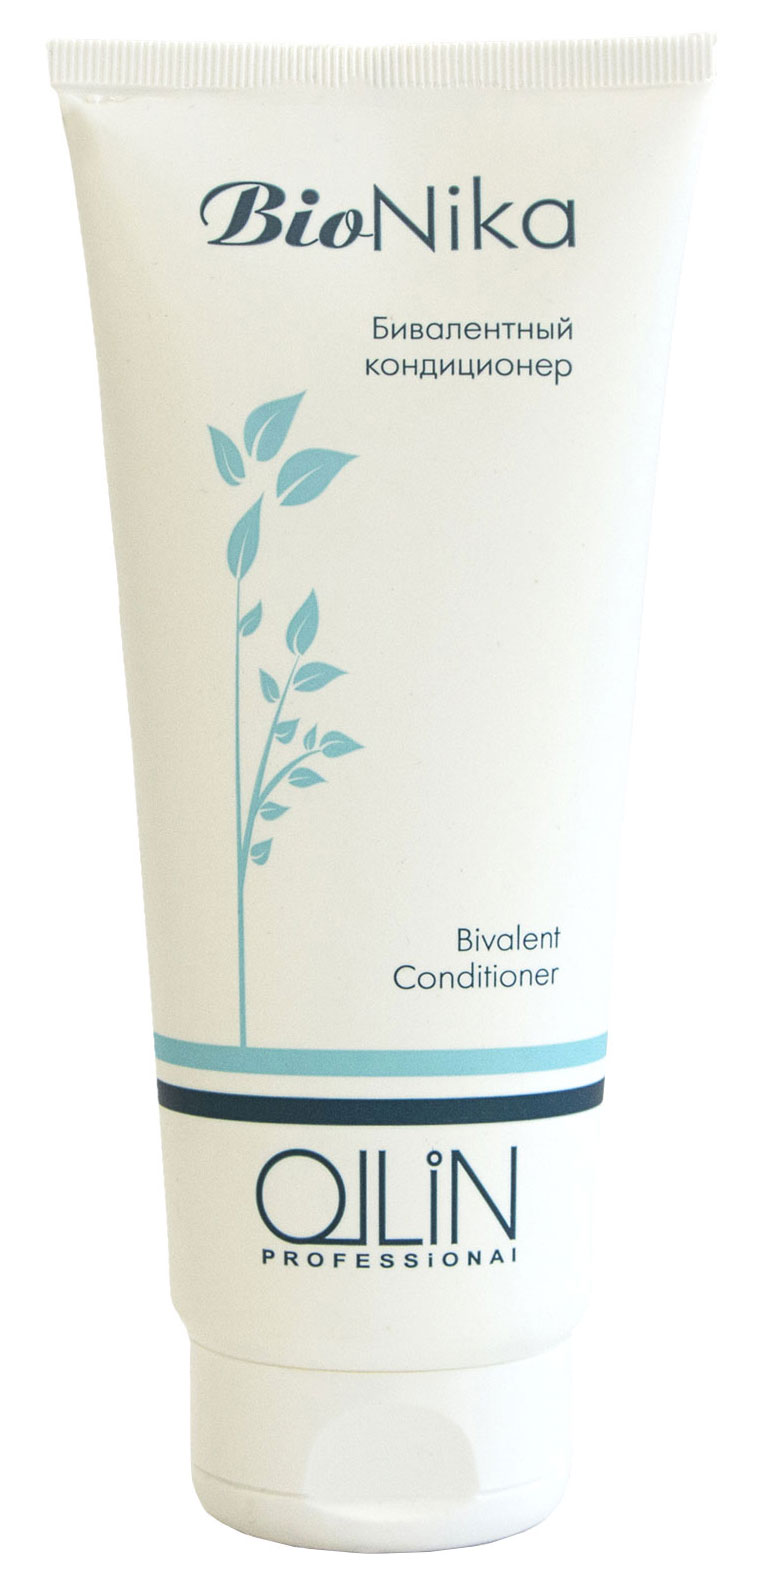 Кондиционер для волос Ollin Professional BioNika Bivalent 200 мл прелесть professional маска для окрашенных или ломких волос интенсивное питание 500